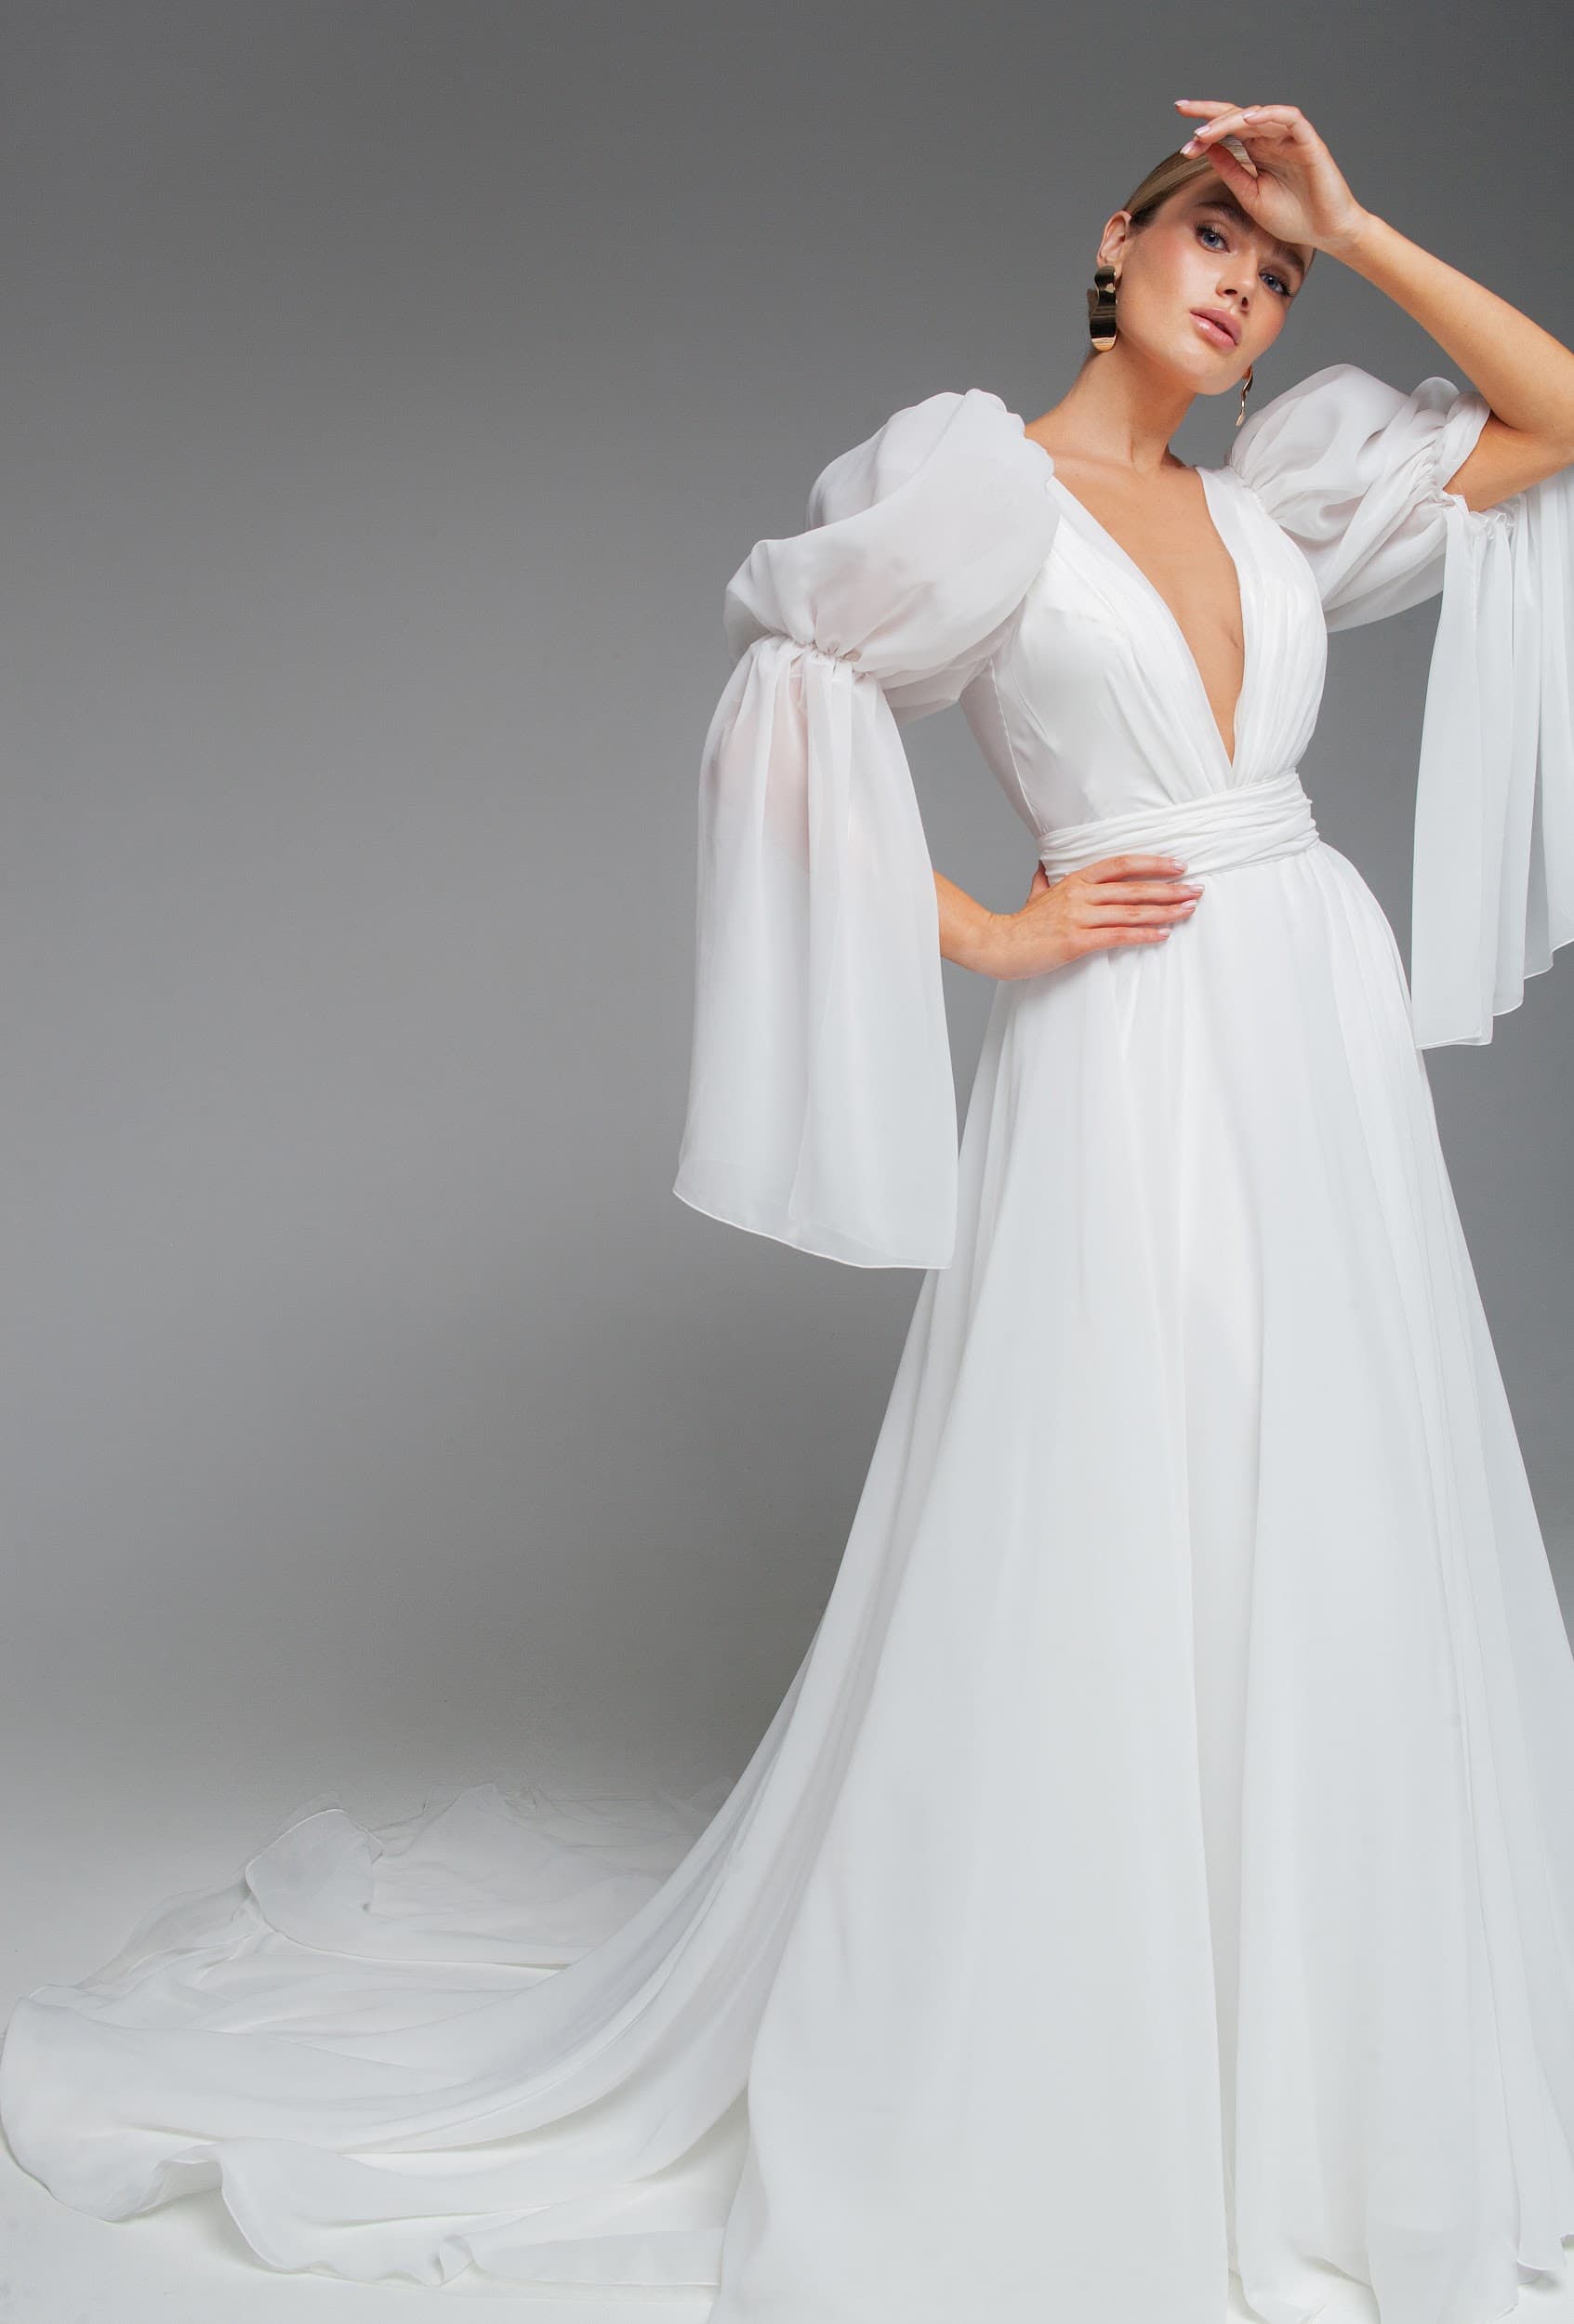 Rara Avis silk open back wedding dress Venta at Dell'Amore Bridal, NZ 6